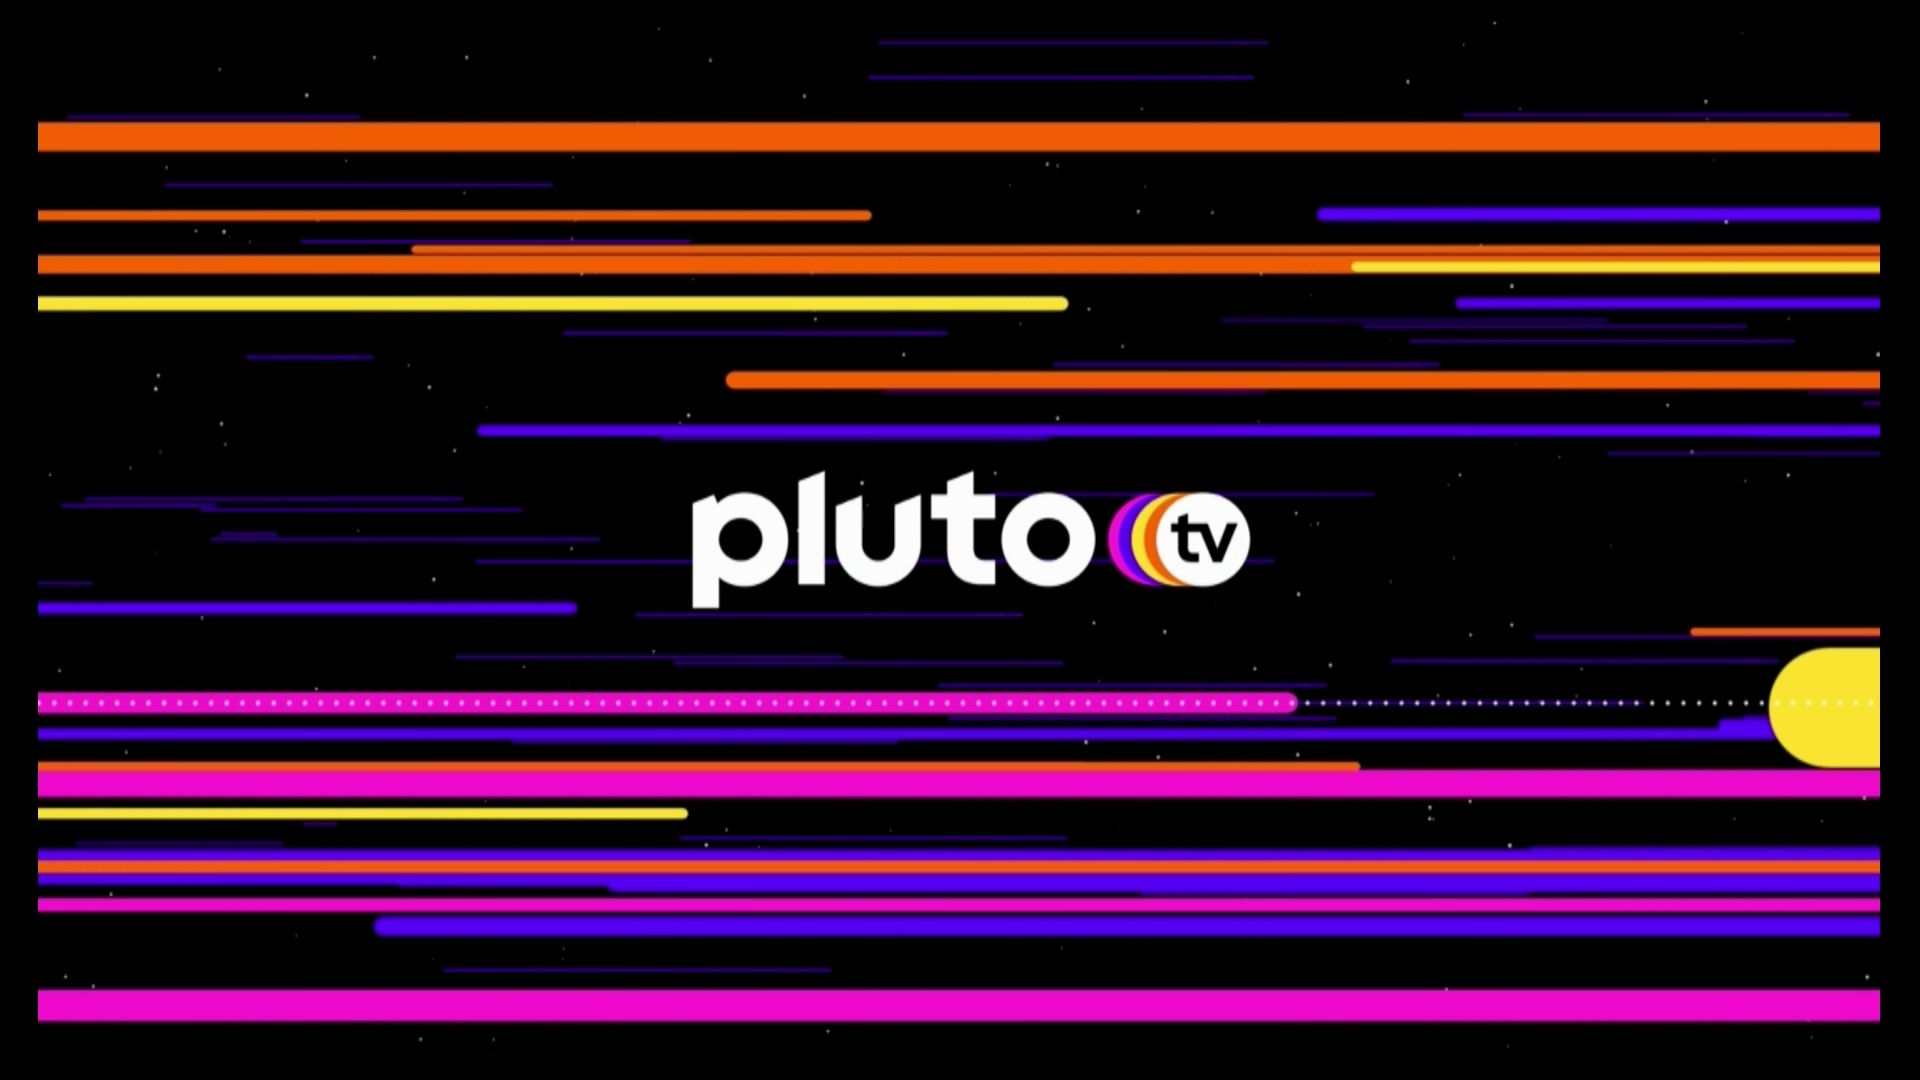 #Pluto TV im August: Eigener Bereich für „Teenage Mutant Ninja Turtles“